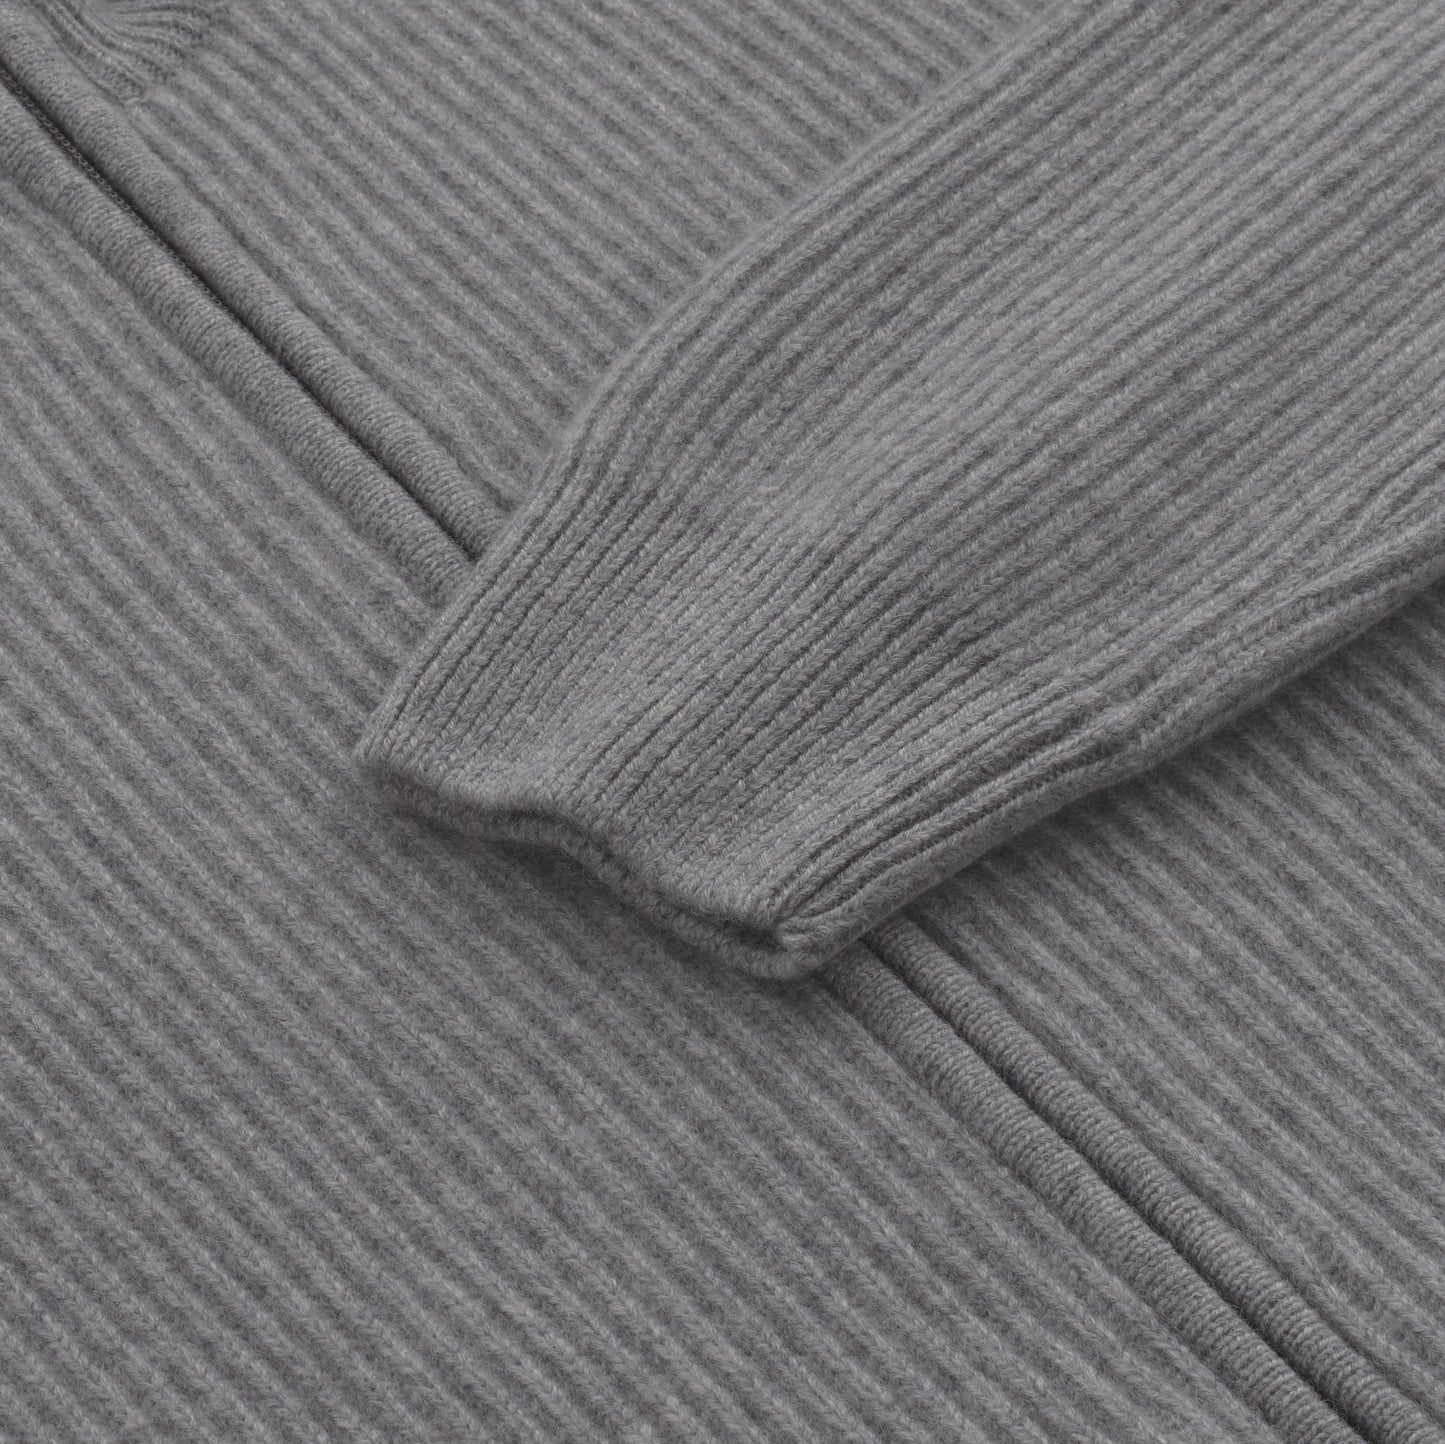 Mandelli Cashmere Zip - Up Sweater in Grey - SARTALE